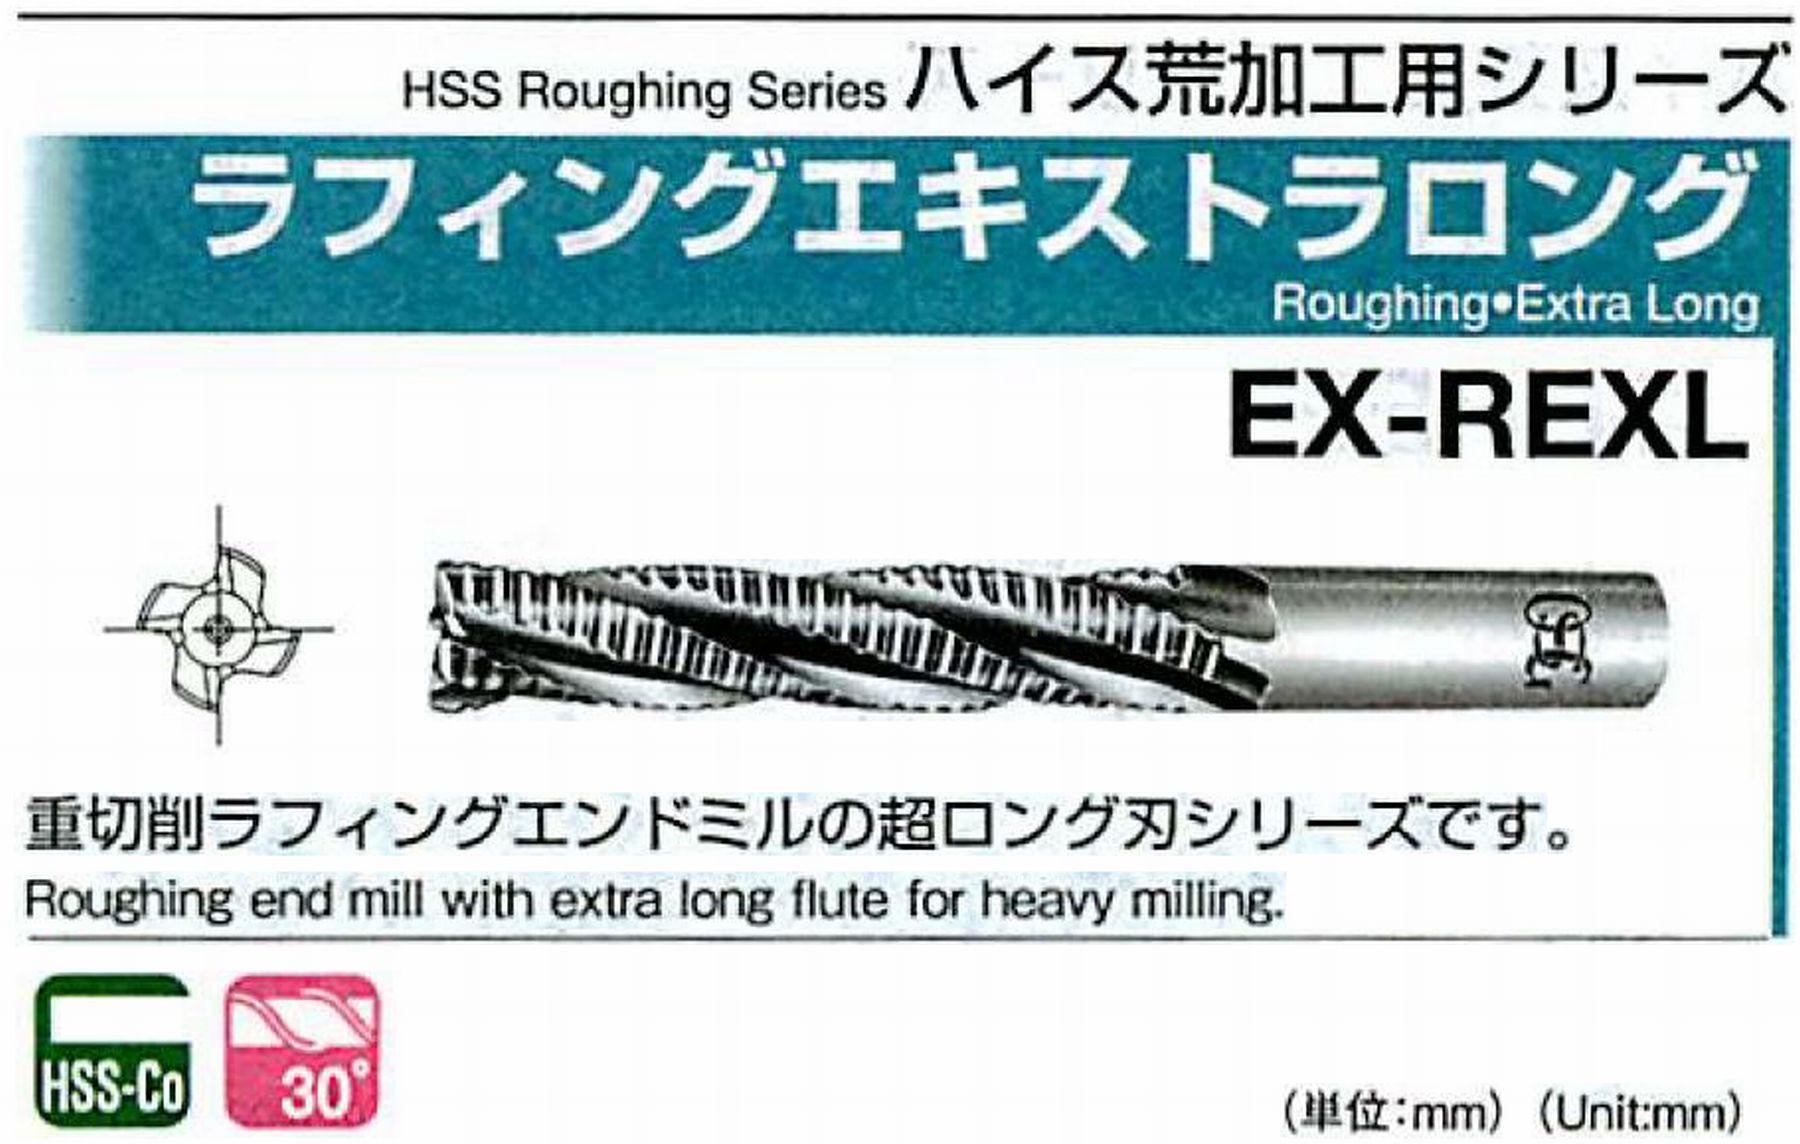 オーエスジー/OSG ラフィングエキストラ ロング EX-REXL 外径45 全長250 刃長150 シャンク径42mm 刃数6